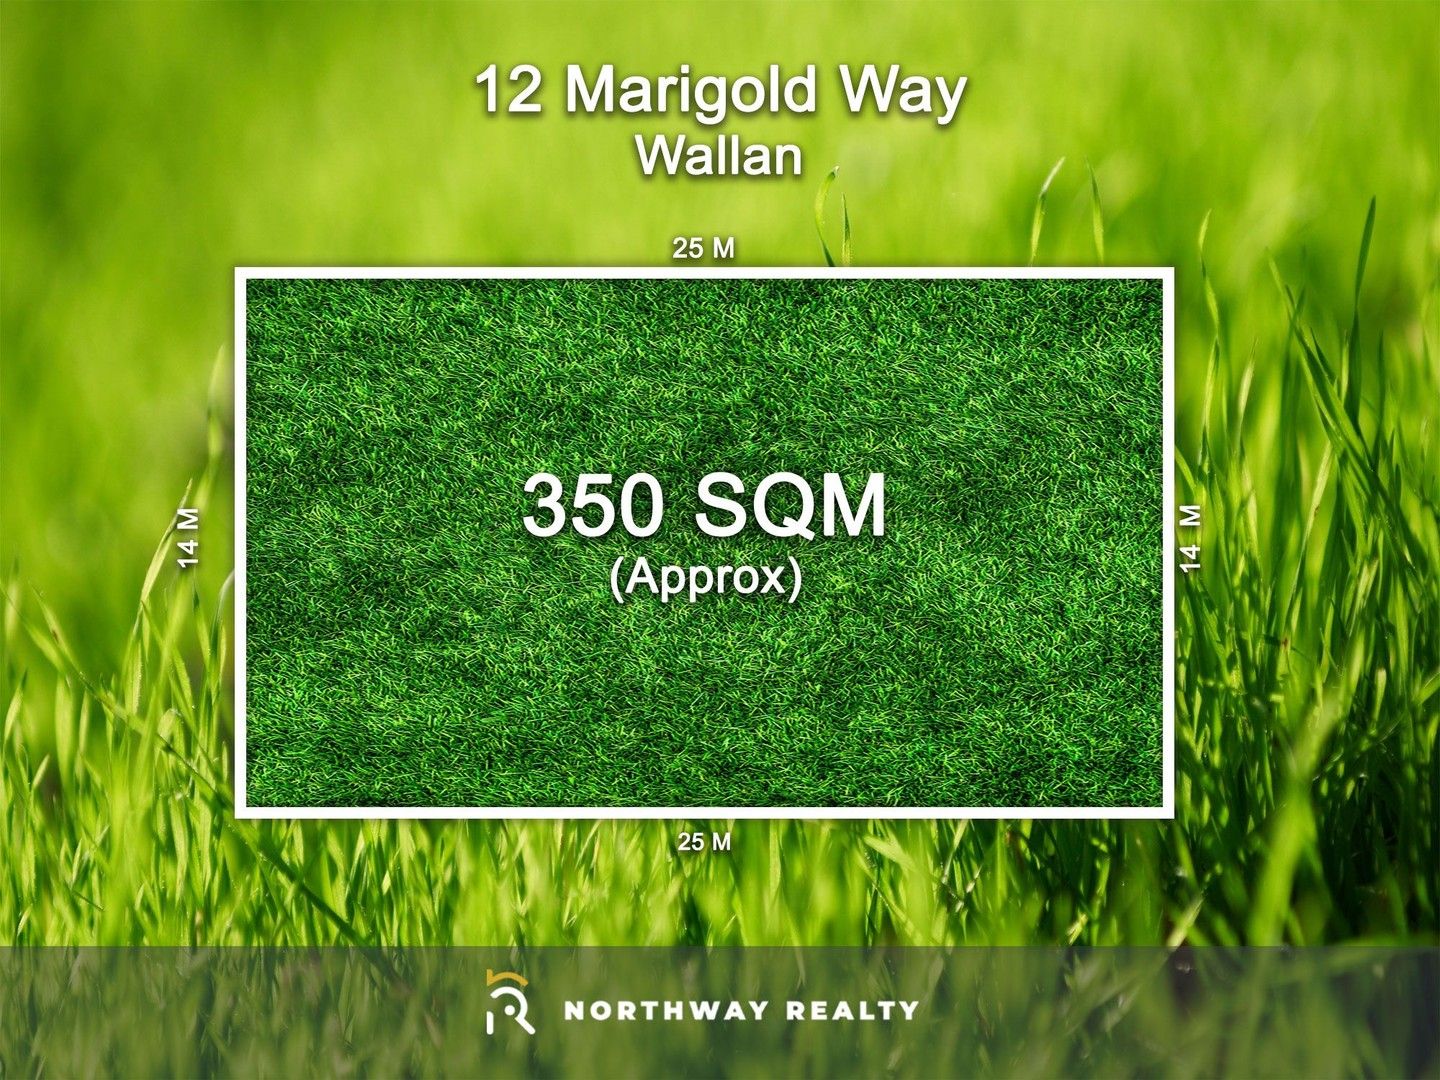 12 Marigold Way, Wallan VIC 3756 | Domain